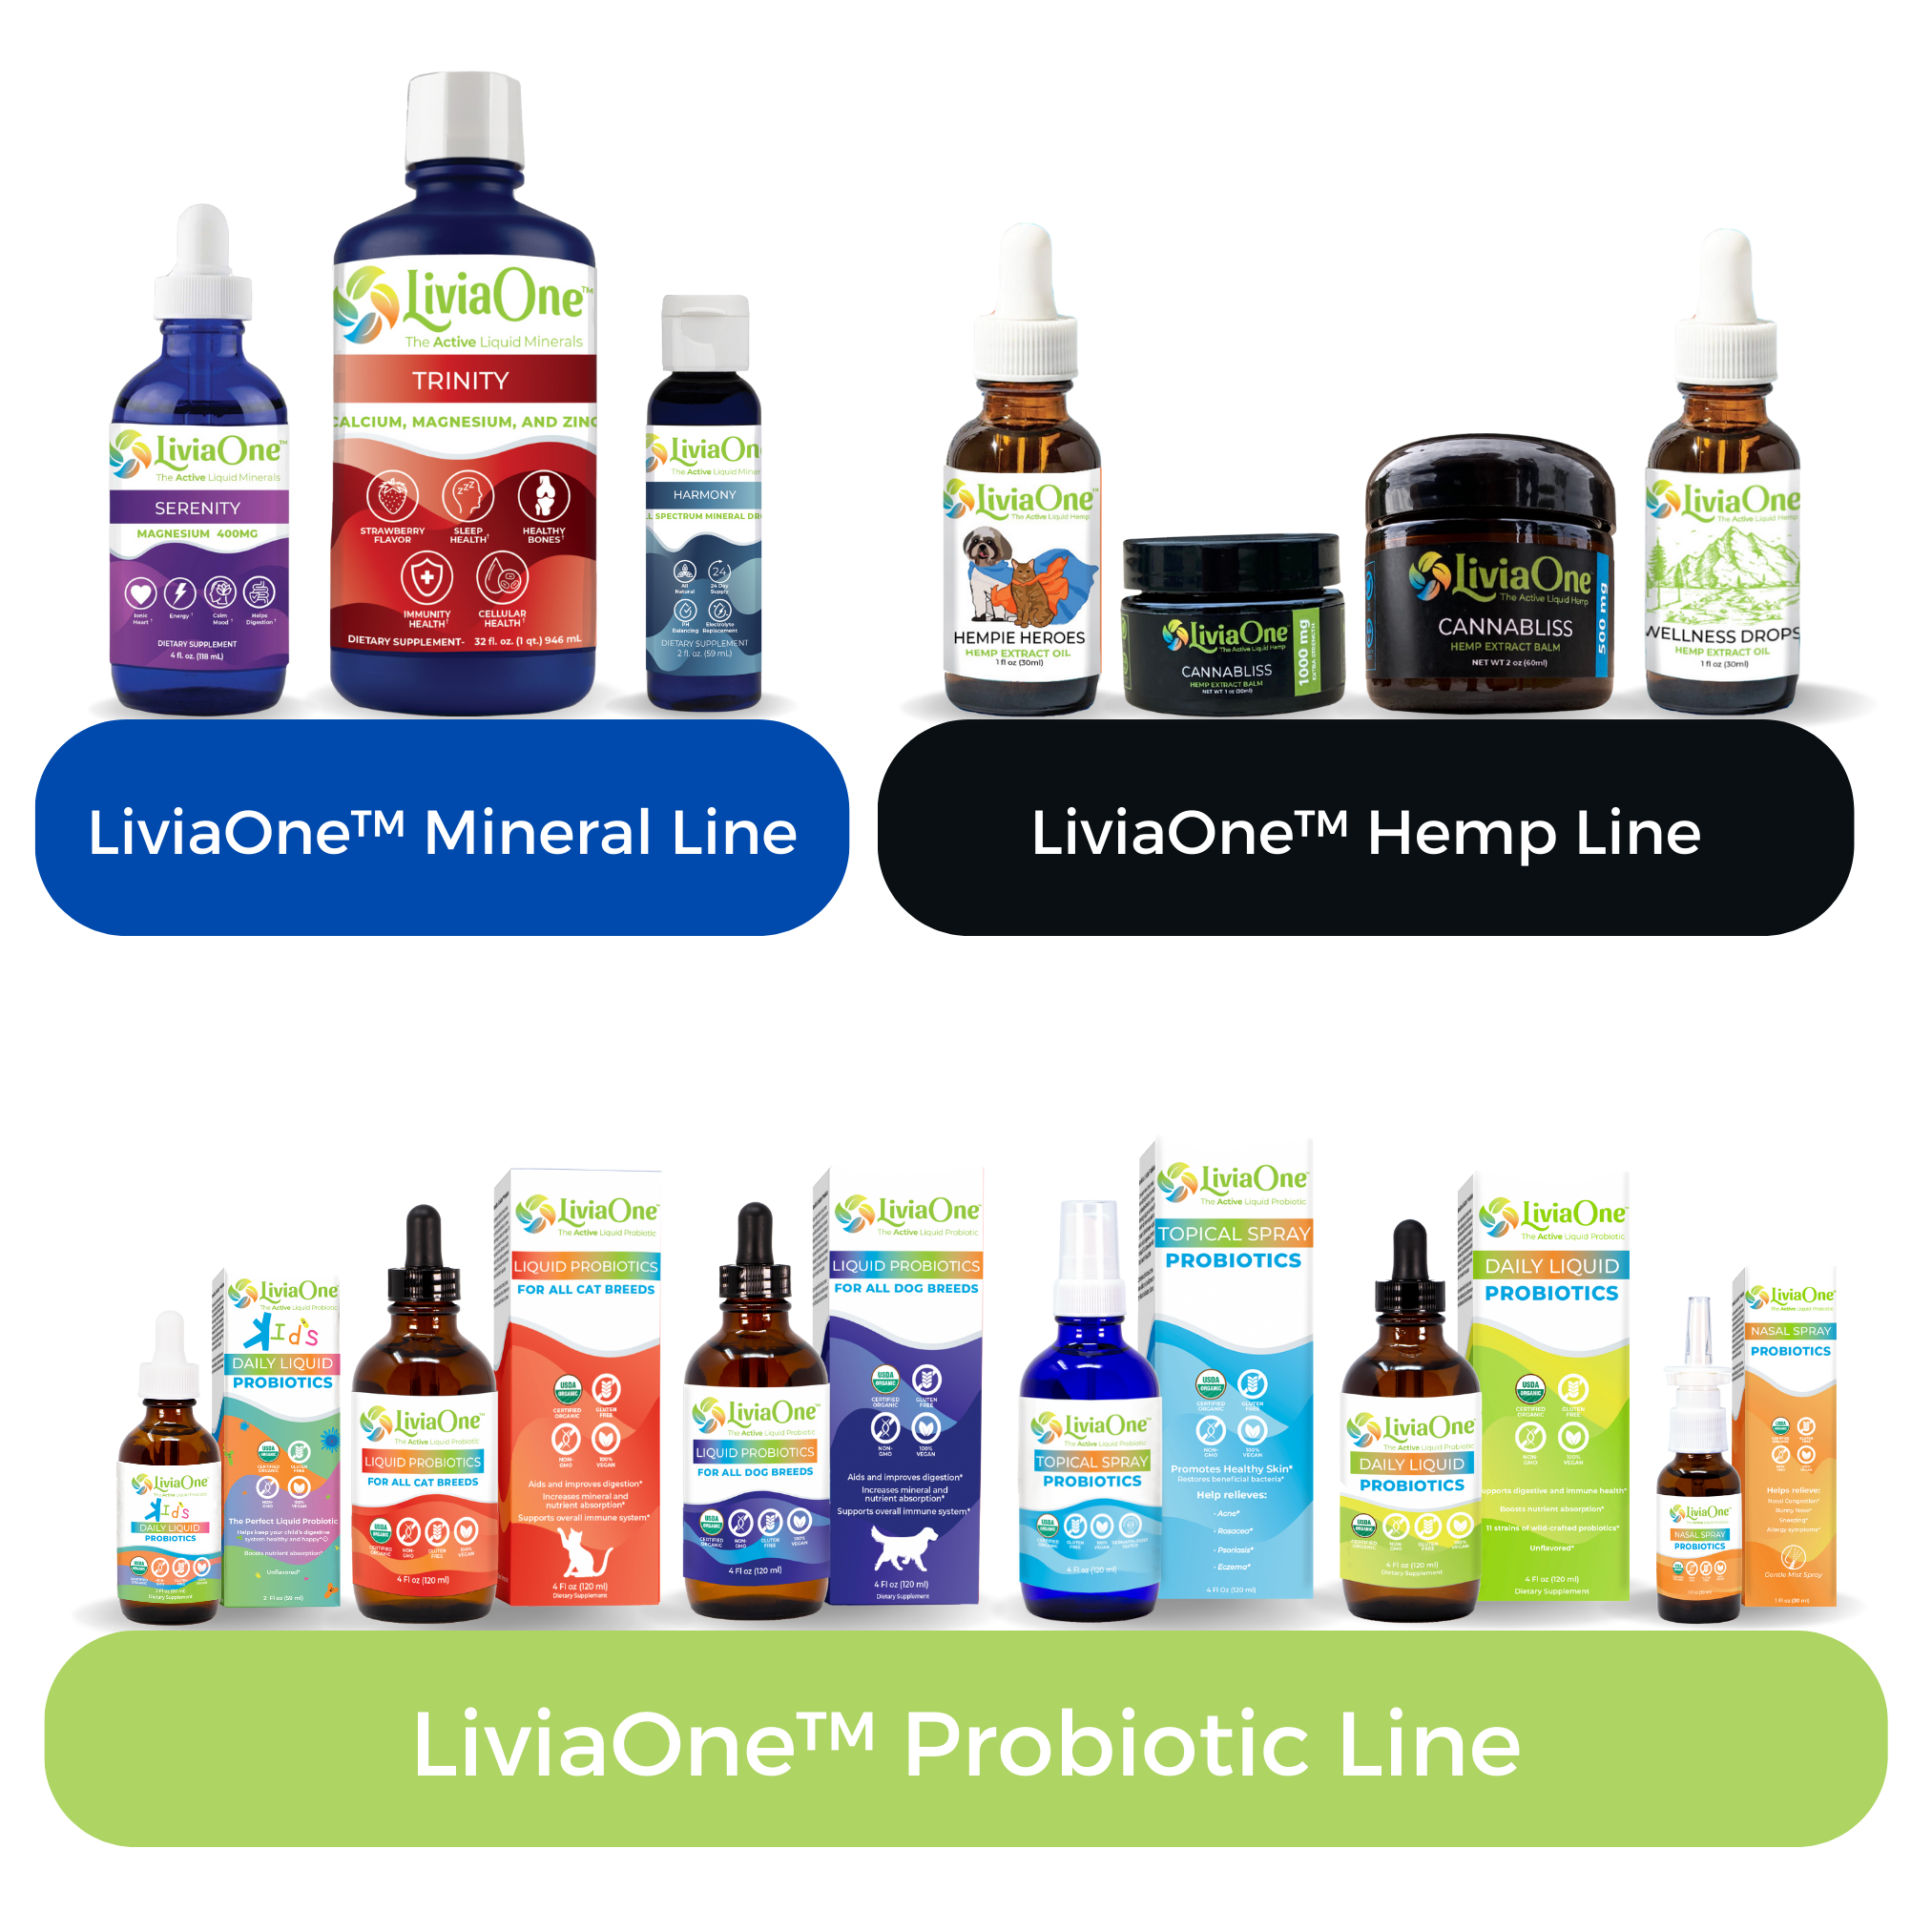 LiviaOne™ Daily Liquid Probiotics - Dropper - 2 oz